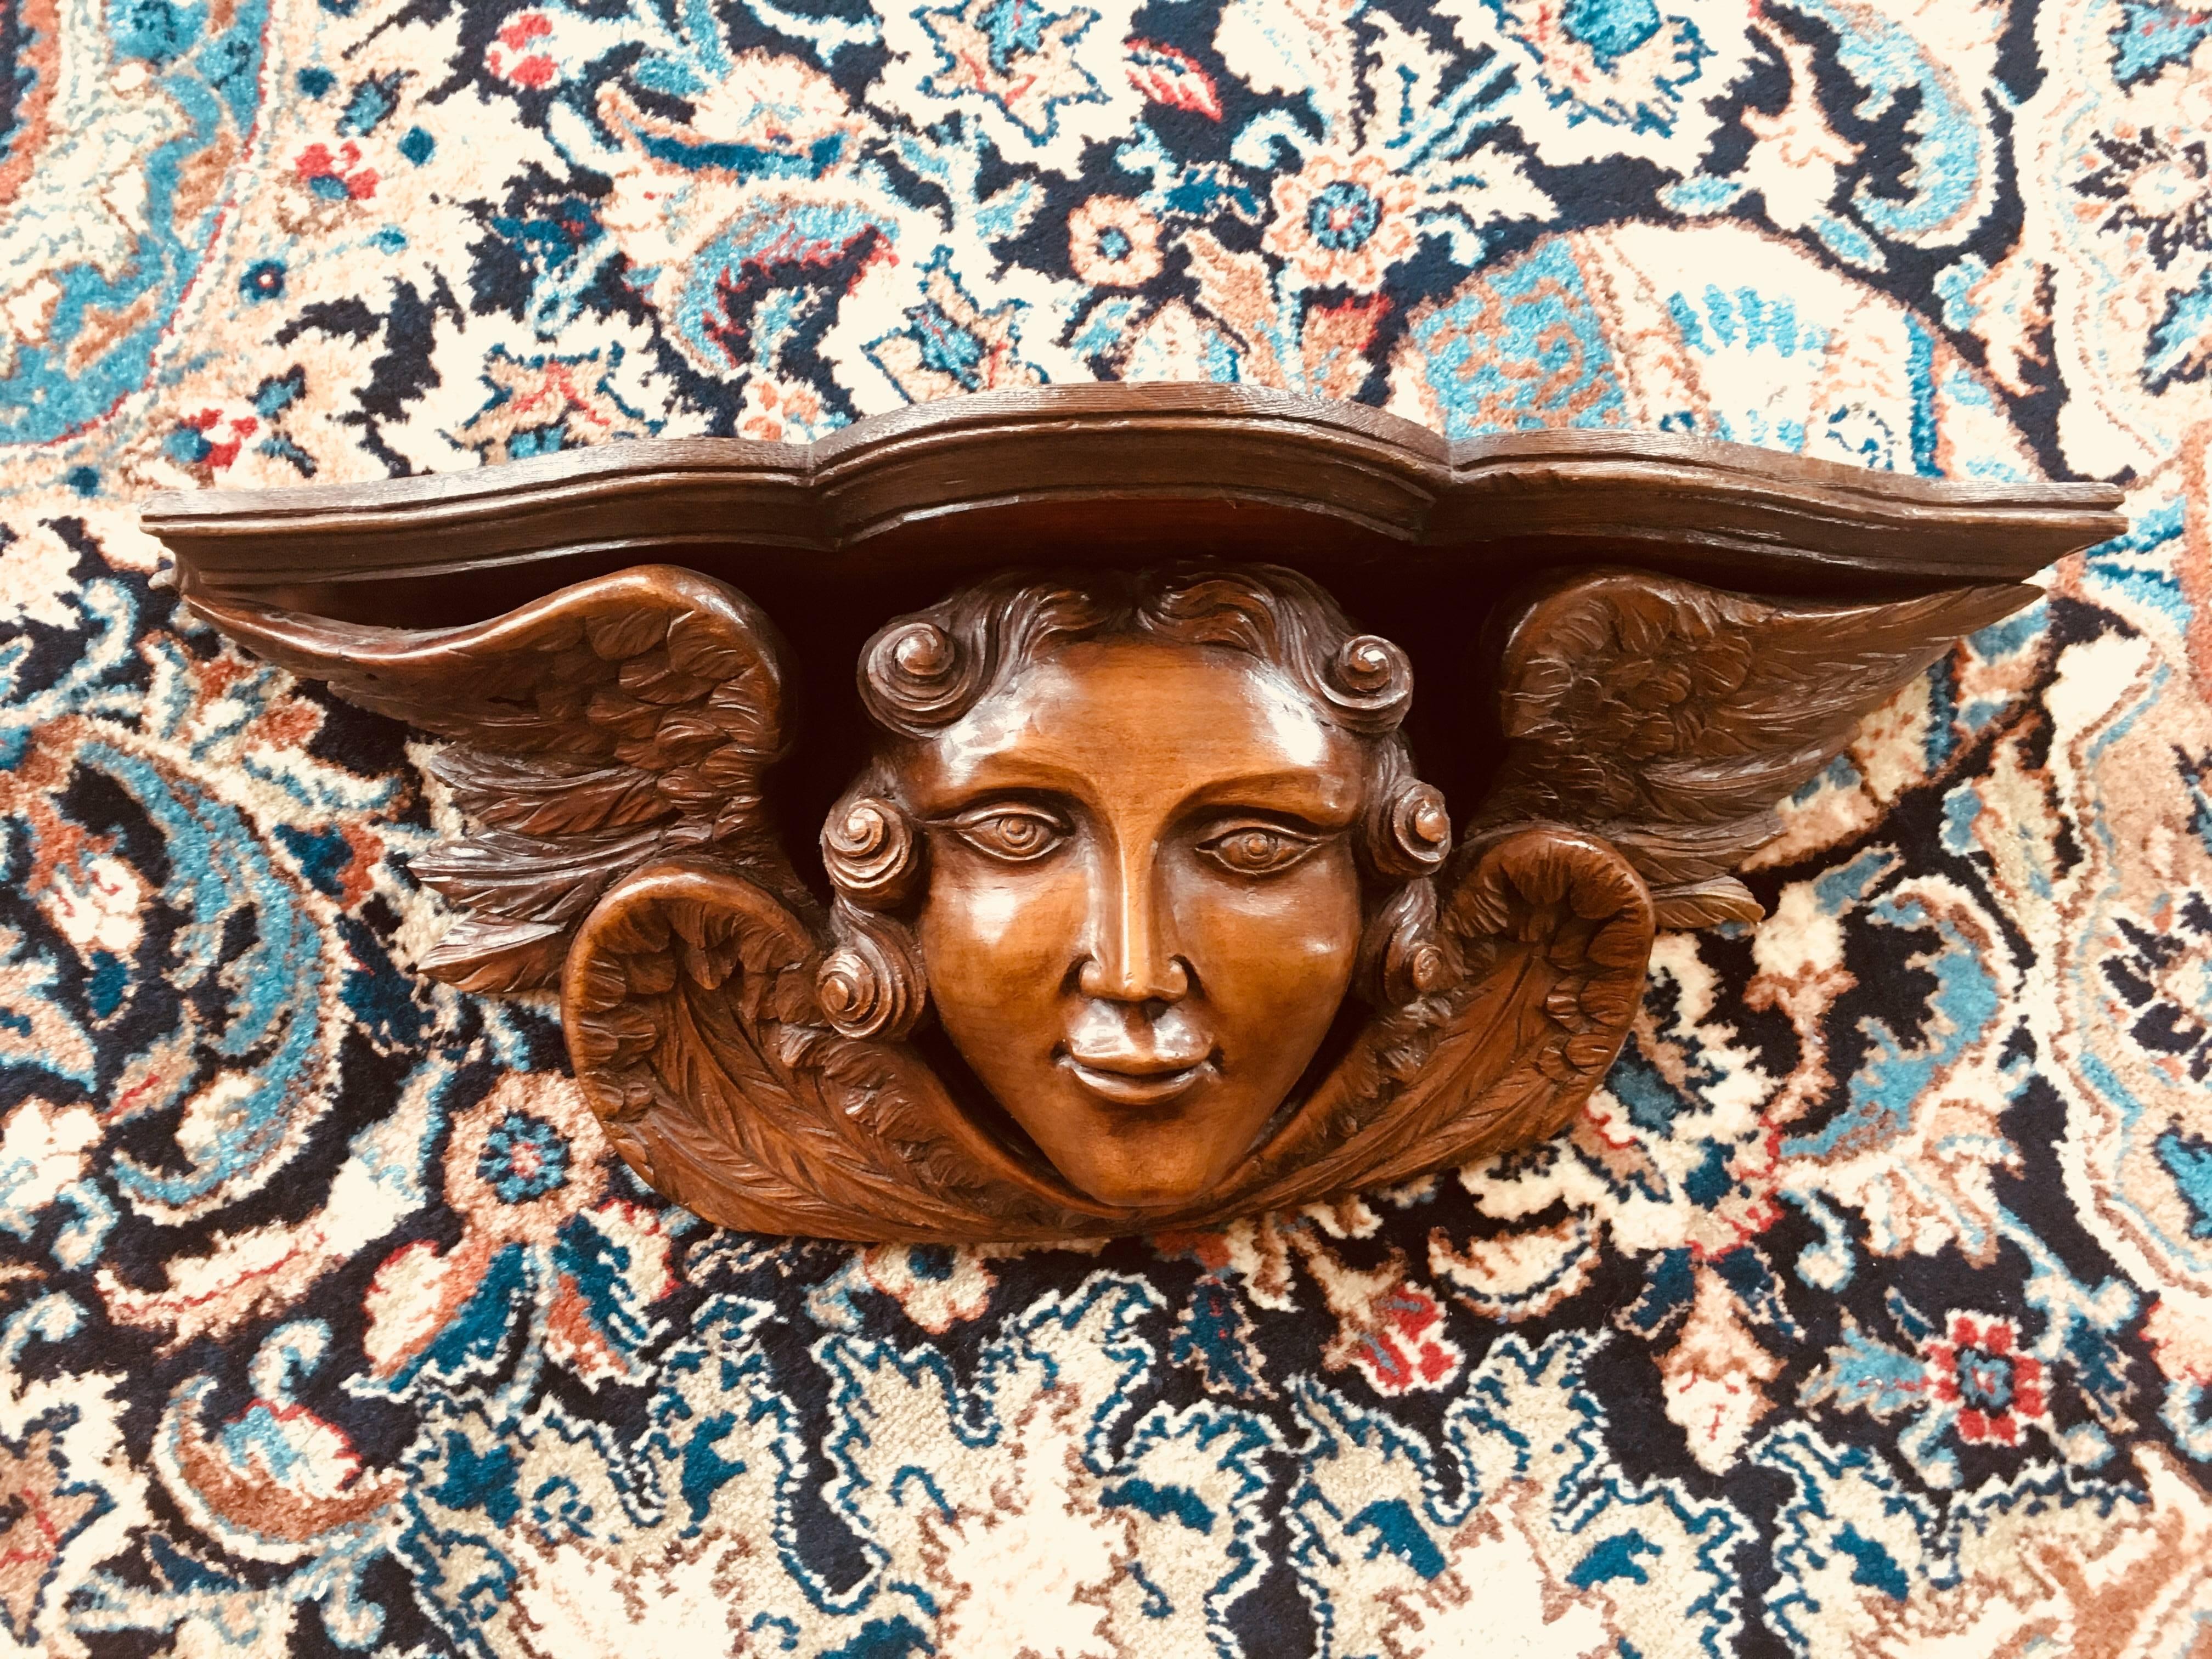 sculpture en noyer du XVIIIe siècle représentant une tête d'ange entourée de quatre ailes, pouvant servir de petite étagère.
Fabriqué en France, vers 1780.